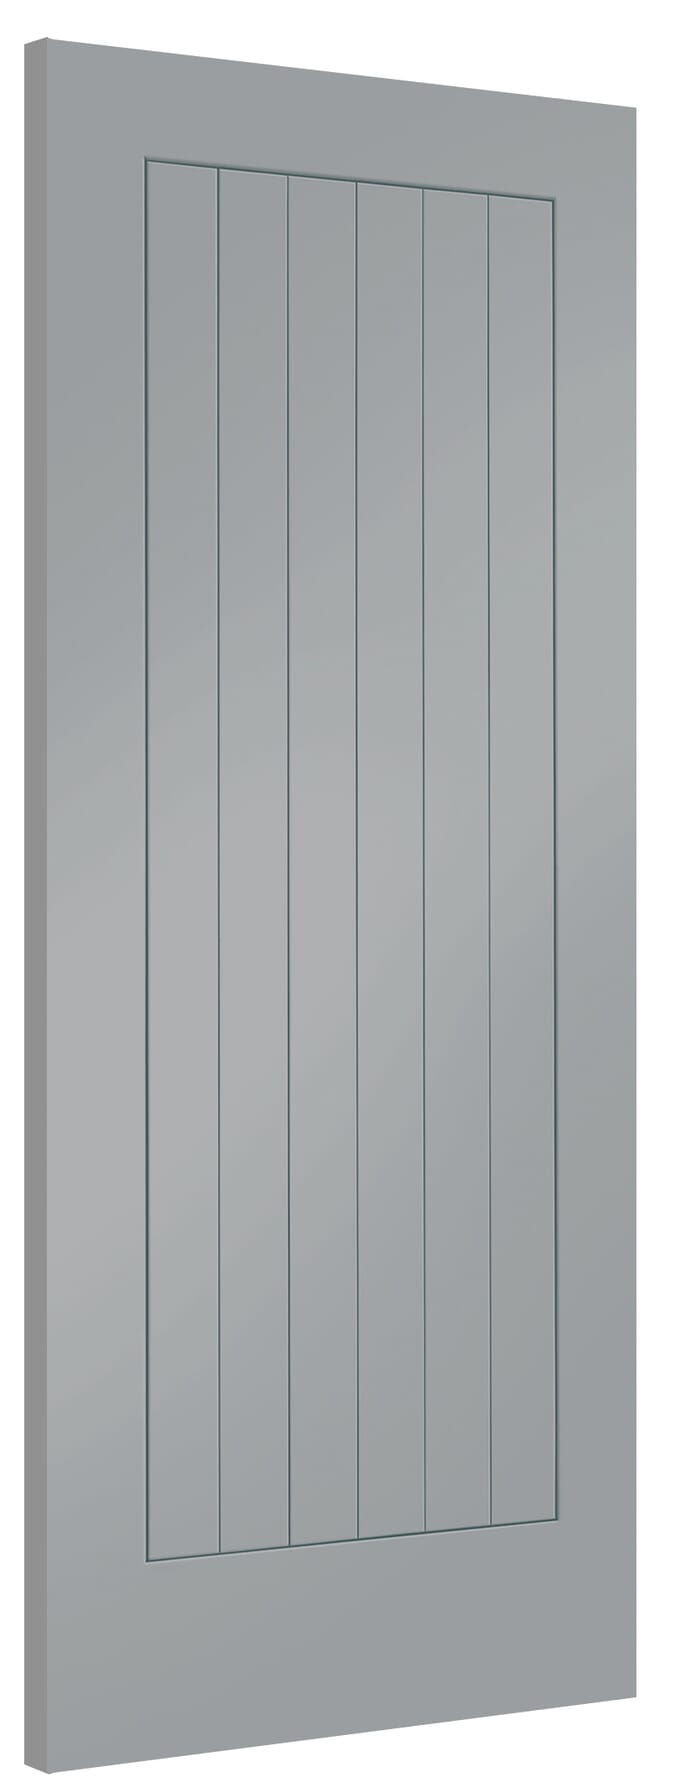 838x1981x44mm (33") Suffolk Storm Grey Internal Doors